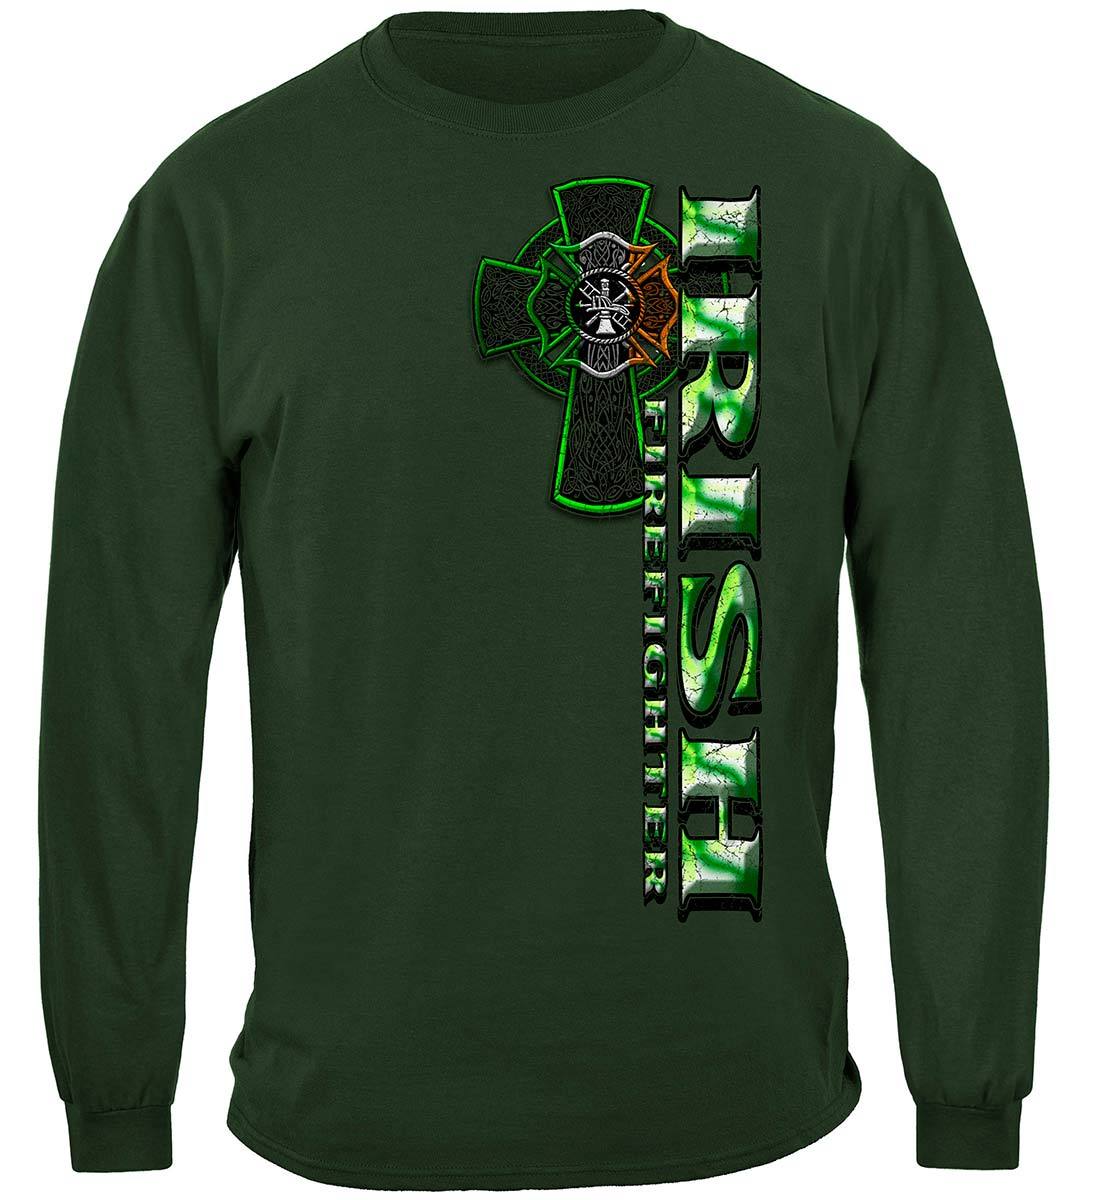 Firefighter Irish Green Foil Premium T-Shirt